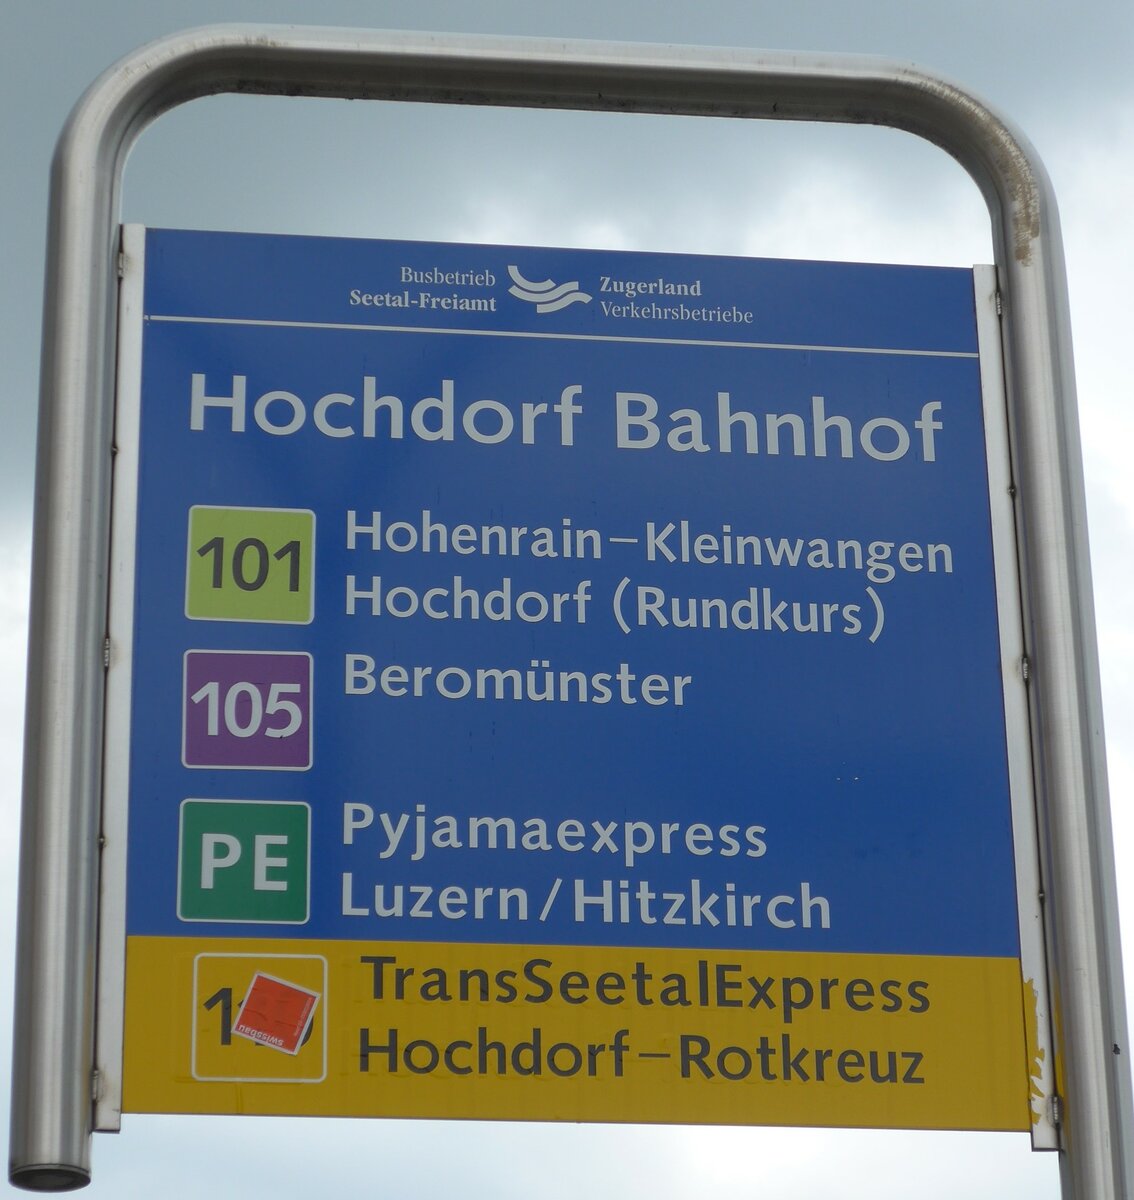 (153'538) - Busbetrieb Seetal-Freiamt/Zugerland Verkehrsbetriebe-Haltestellenschild - Hochdorf, Bahnhof - am 2. August 2014